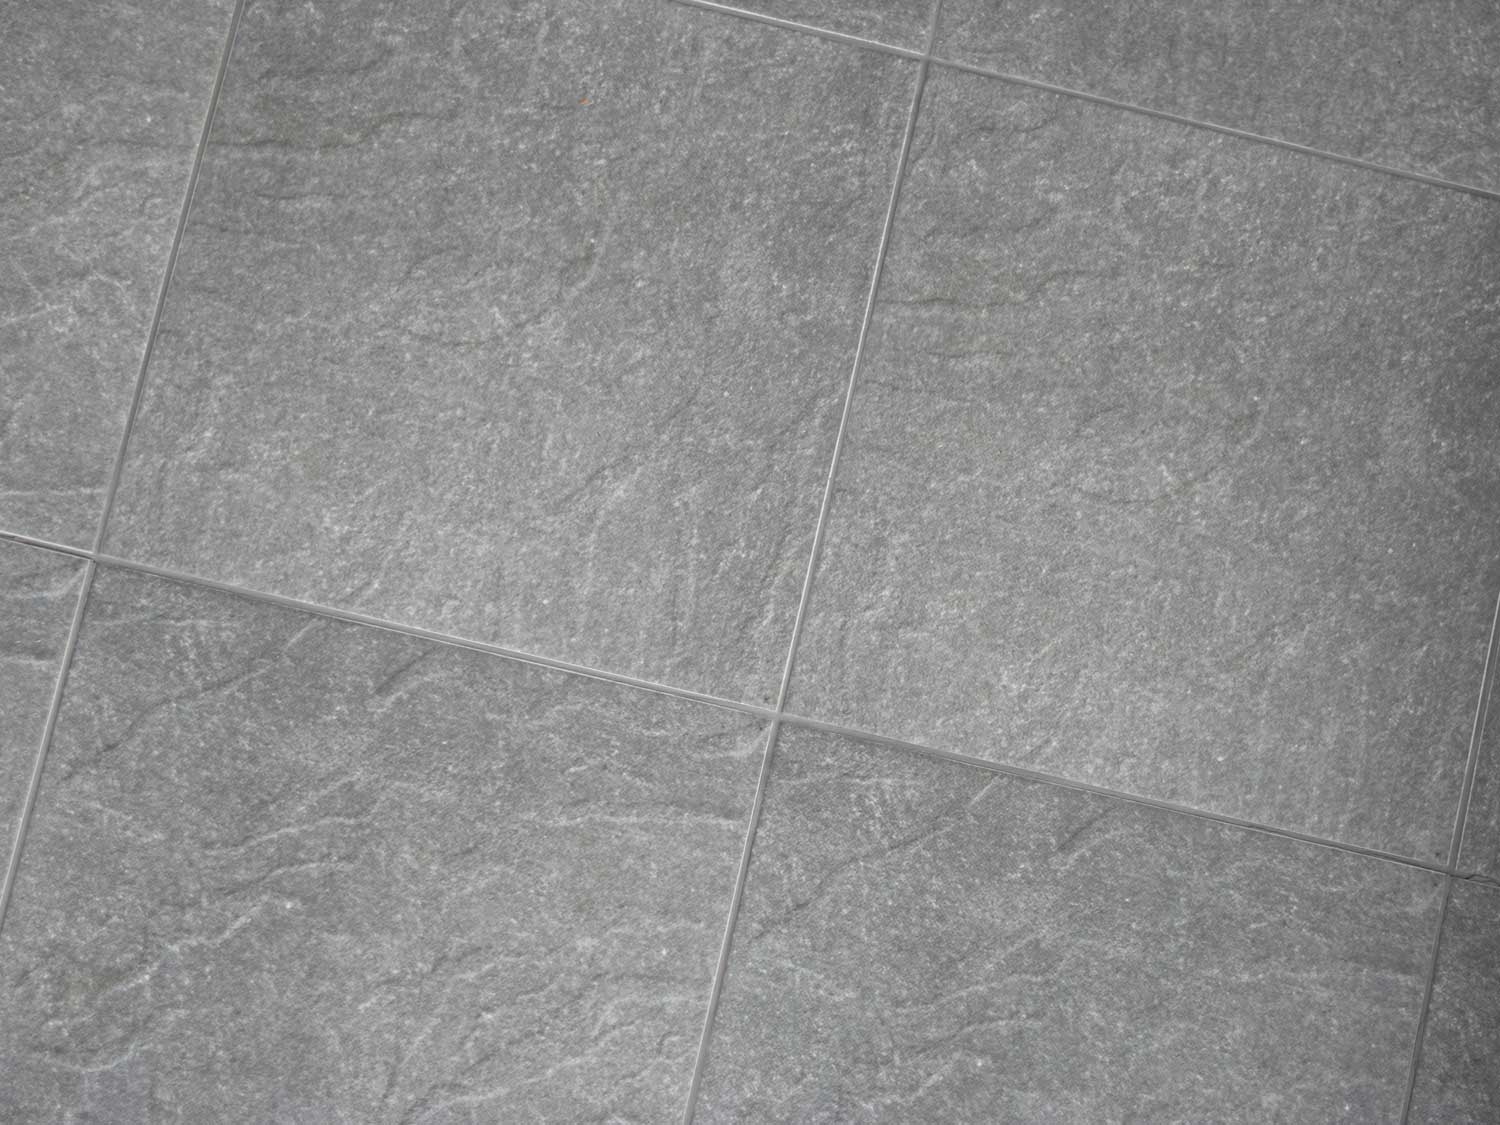 Rustico Ash Ceramic Floor Tile 